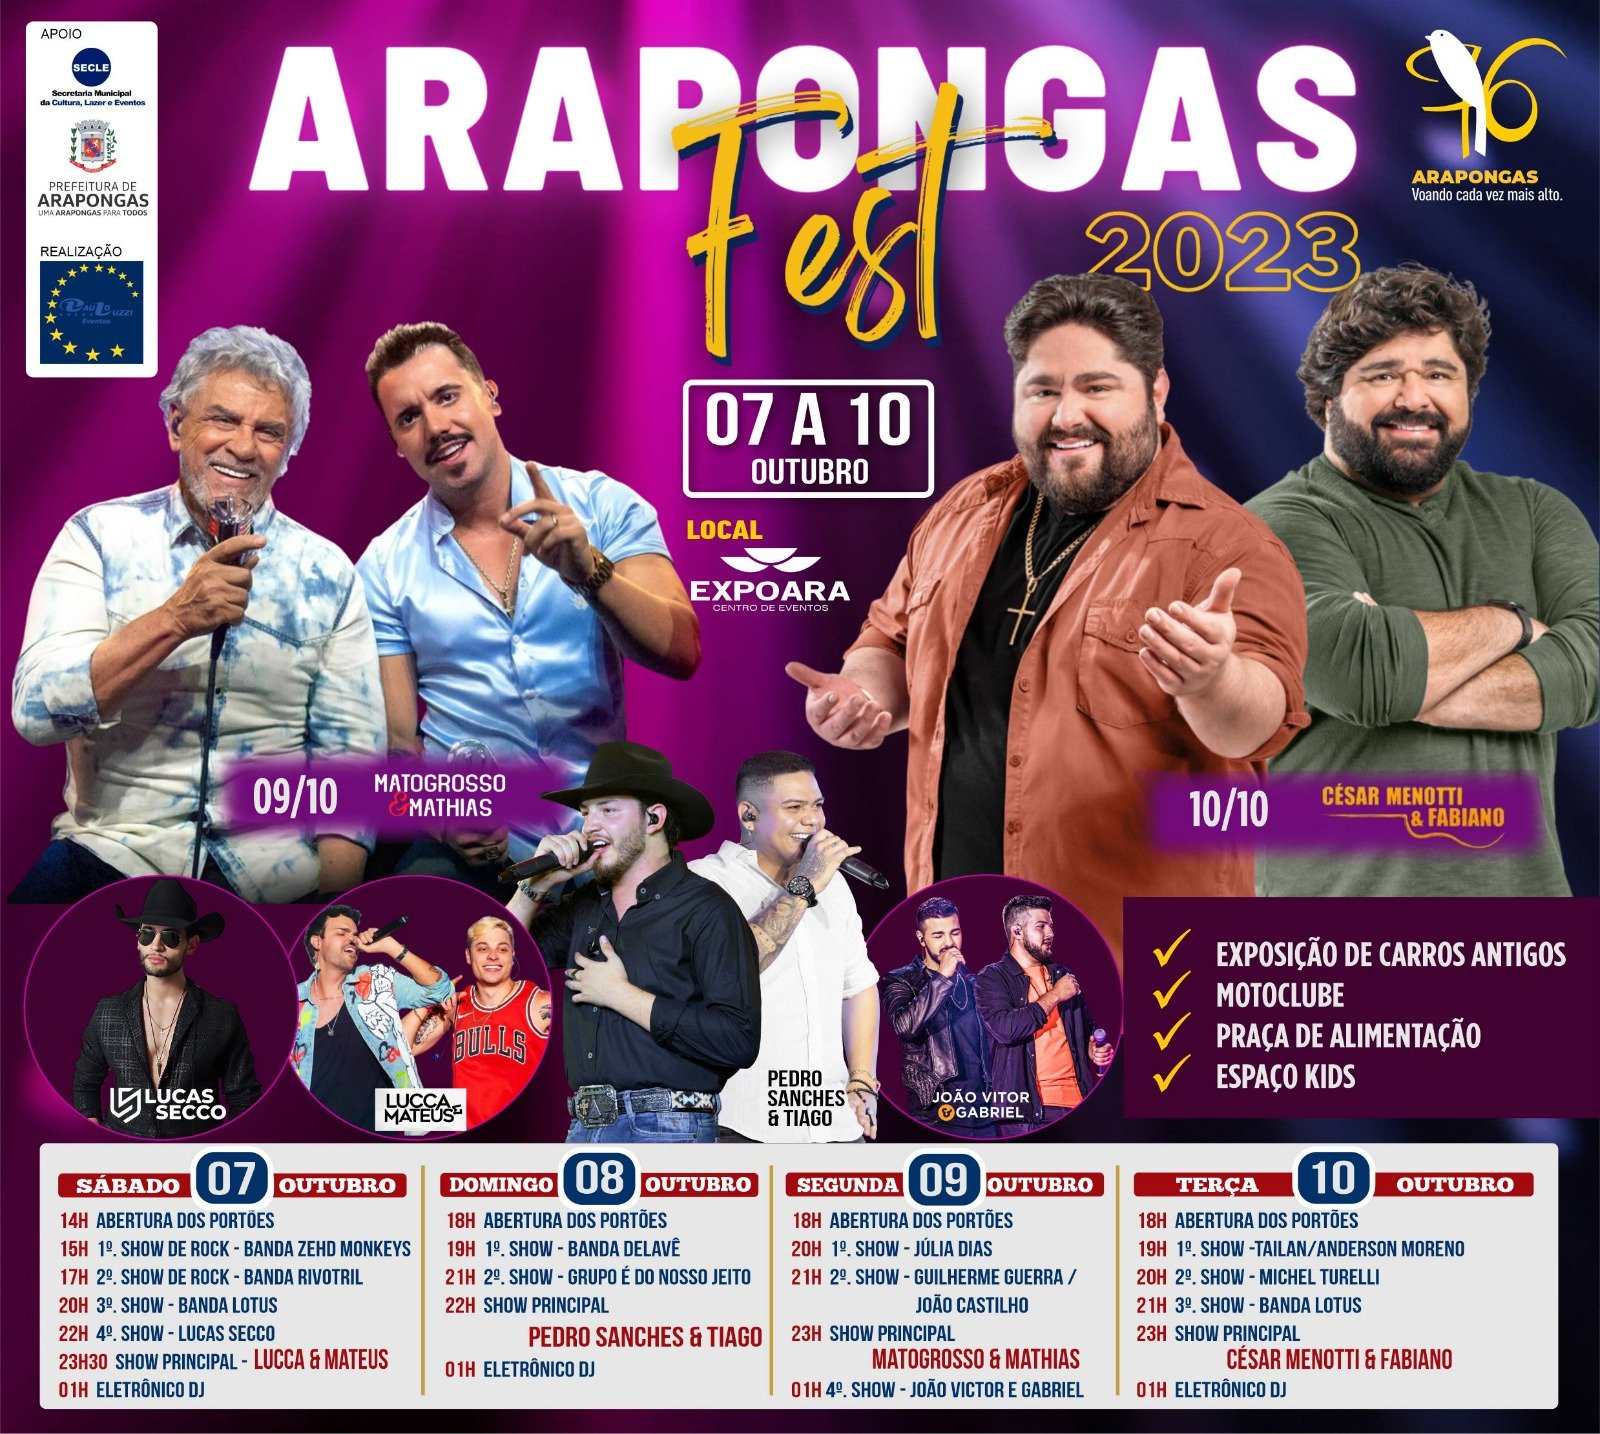 De 07 a 10 de outubro: Prefeitura divulga programação completa da Arapongas Fest 2023